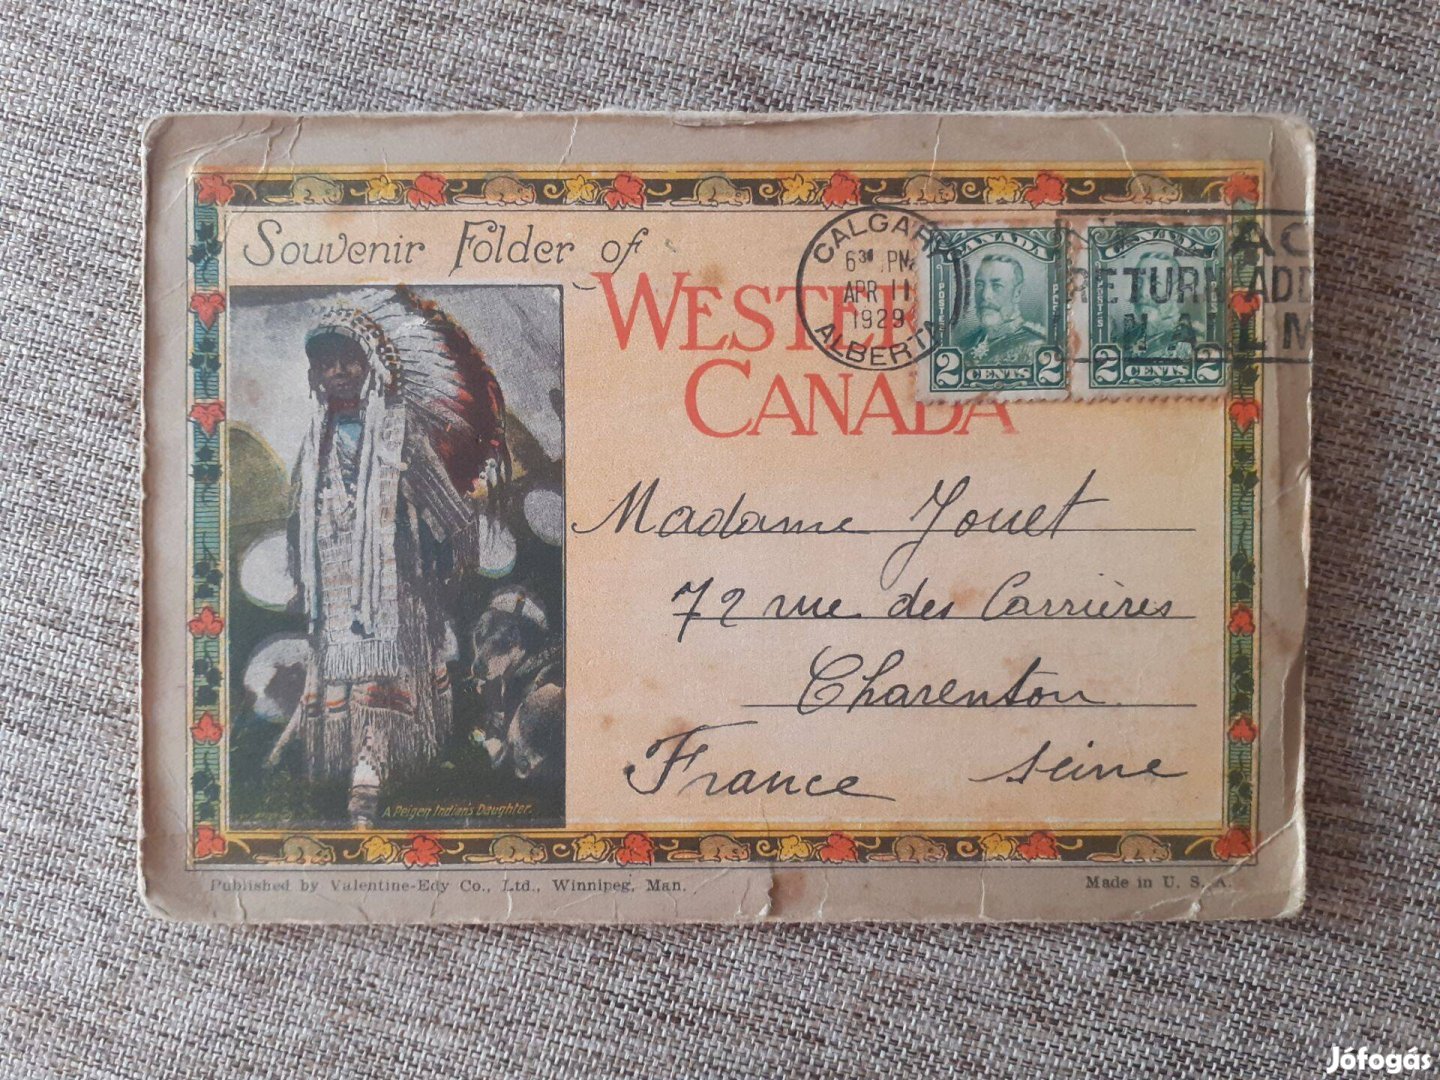 Kanada 1929-es leporello képeslap eladó